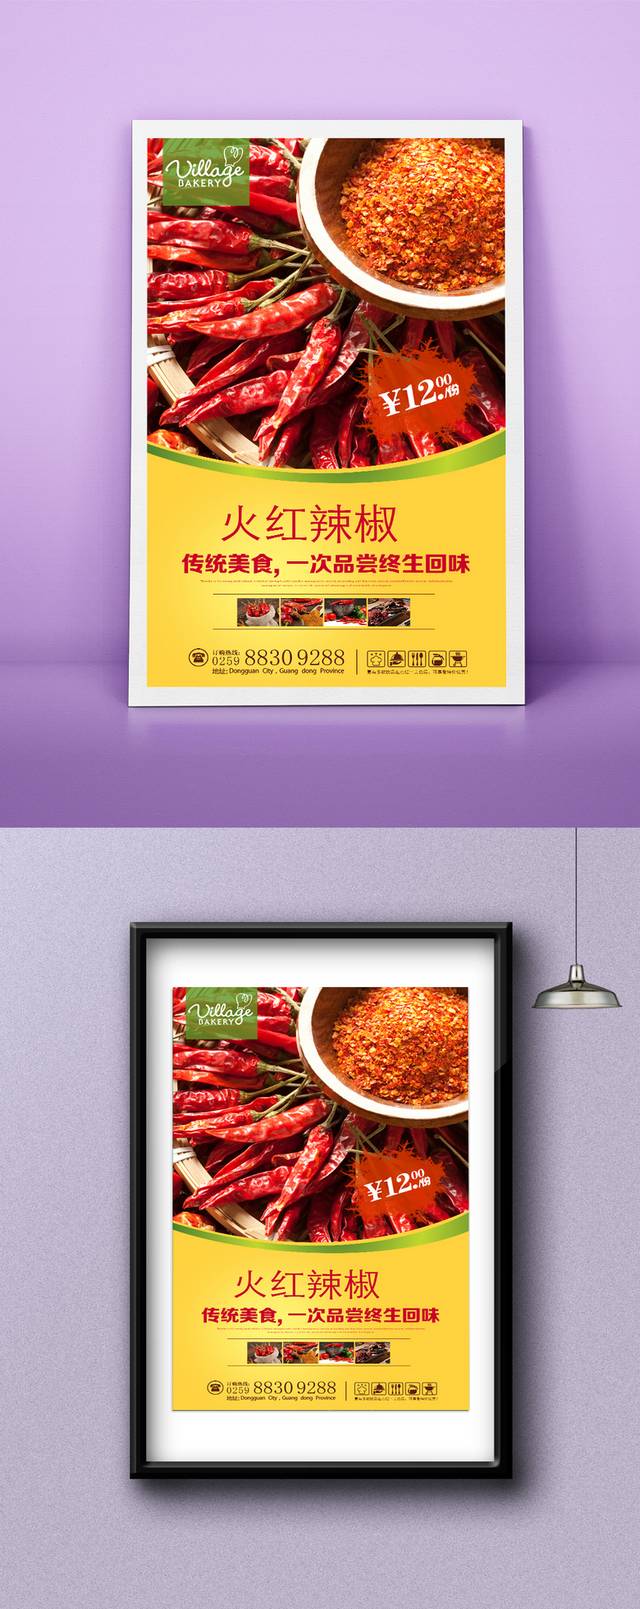 高清辣椒宣传海报设计psd模板